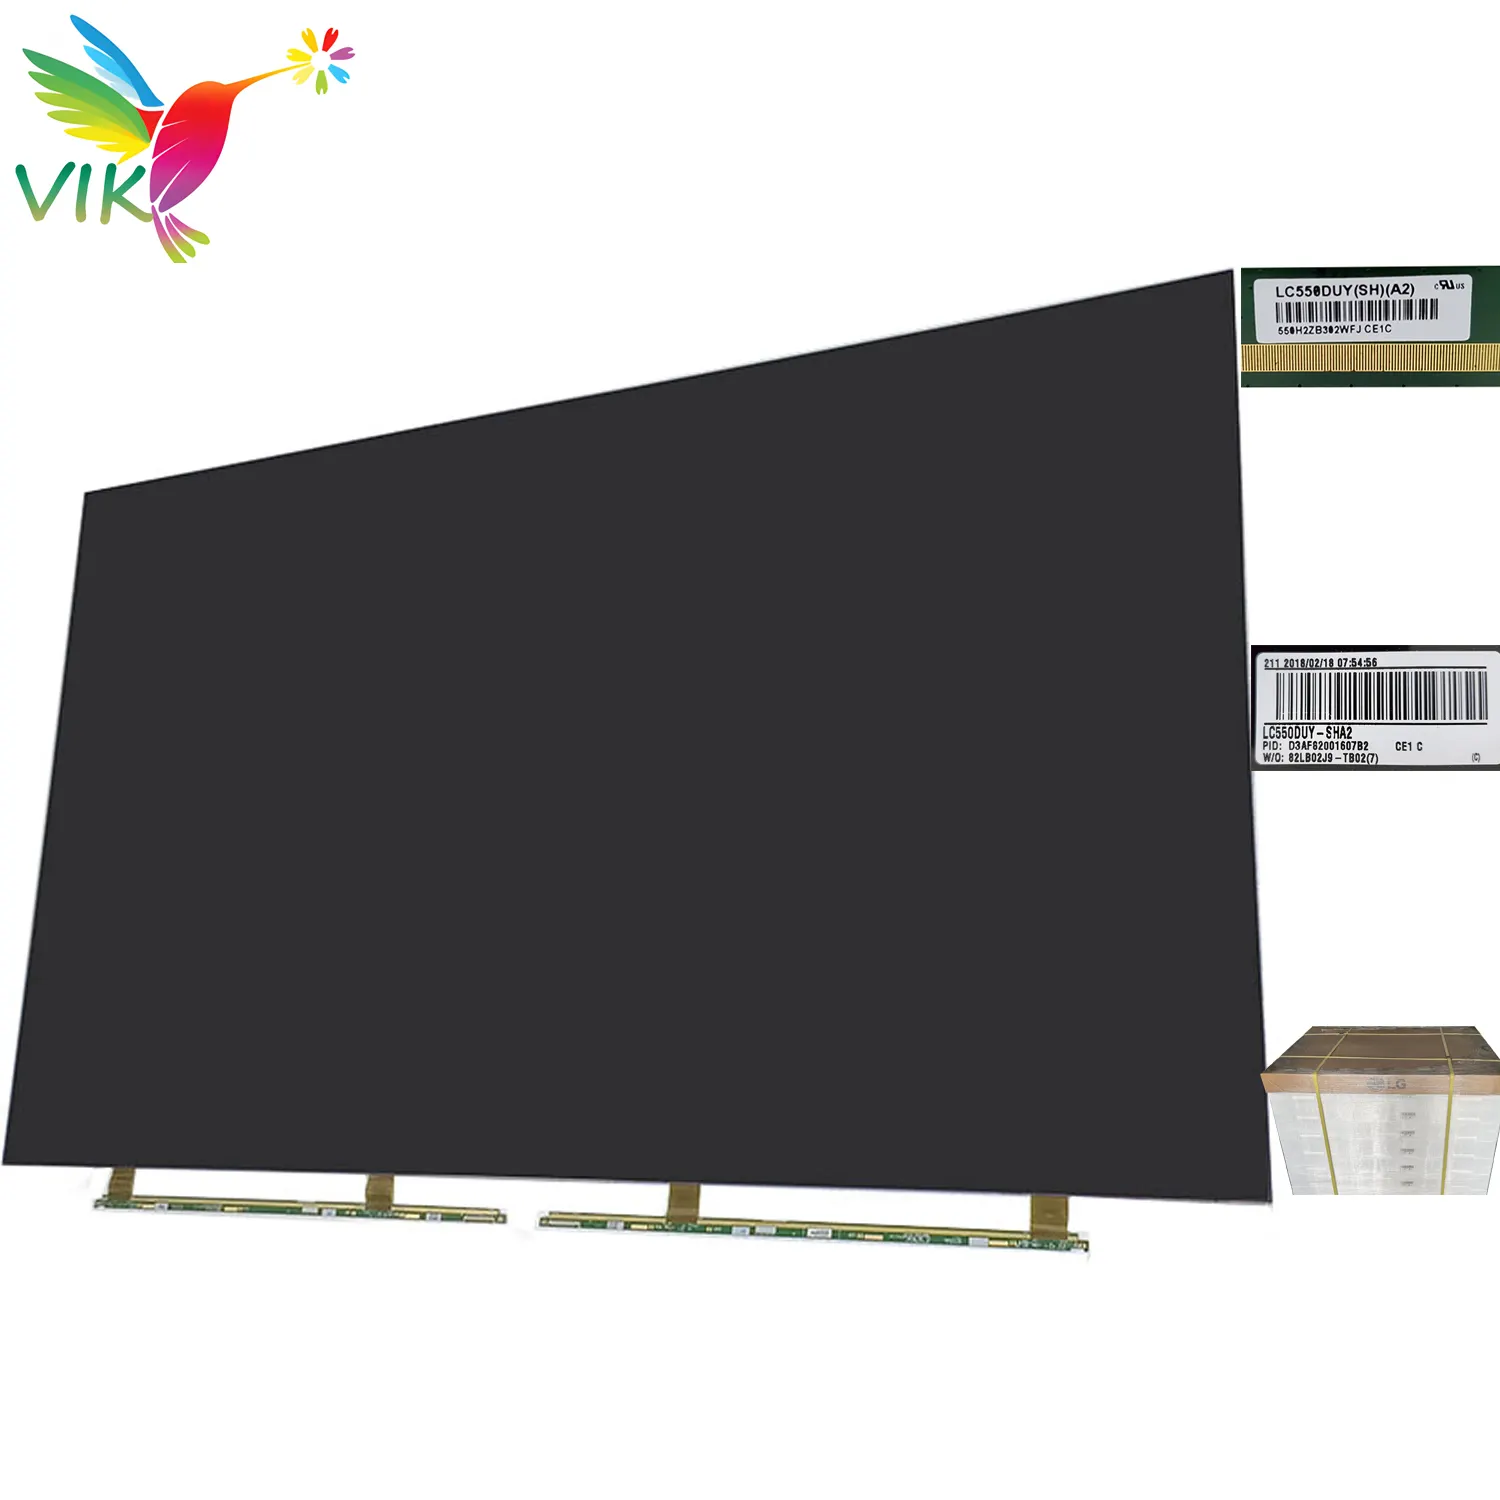 LC550DUY-SHA2 LCDTVスクリーンパネル55インチオープンセルオリジナルボーダーディスプレイ画面なし